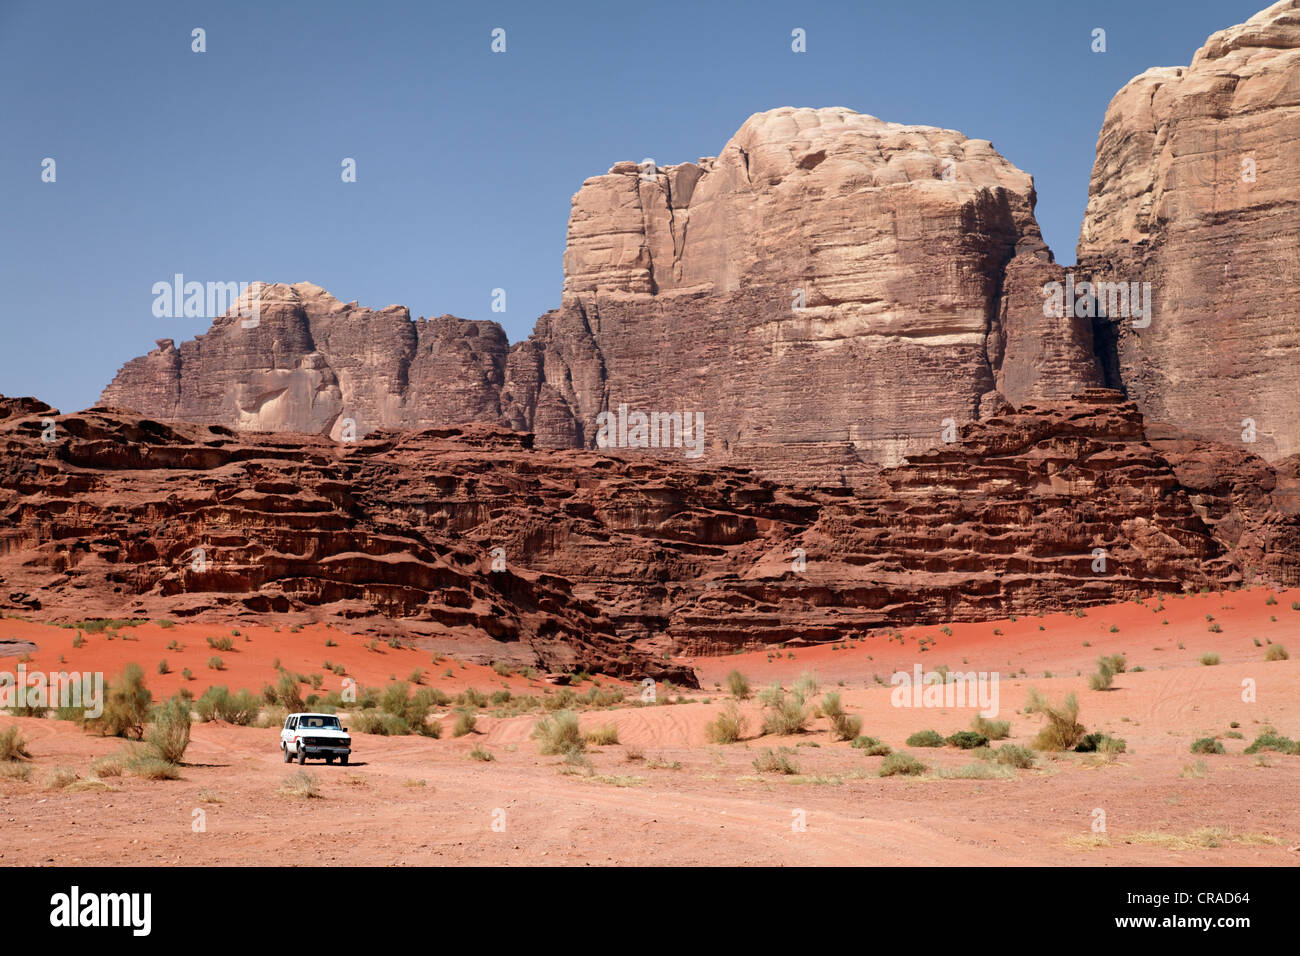 Off-Road-Fahrzeug vor Bergen, weiten Ebenen und roter Sand in der Wüste, Wadi Rum, Haschemitischen Königreich Jordanien Stockfoto